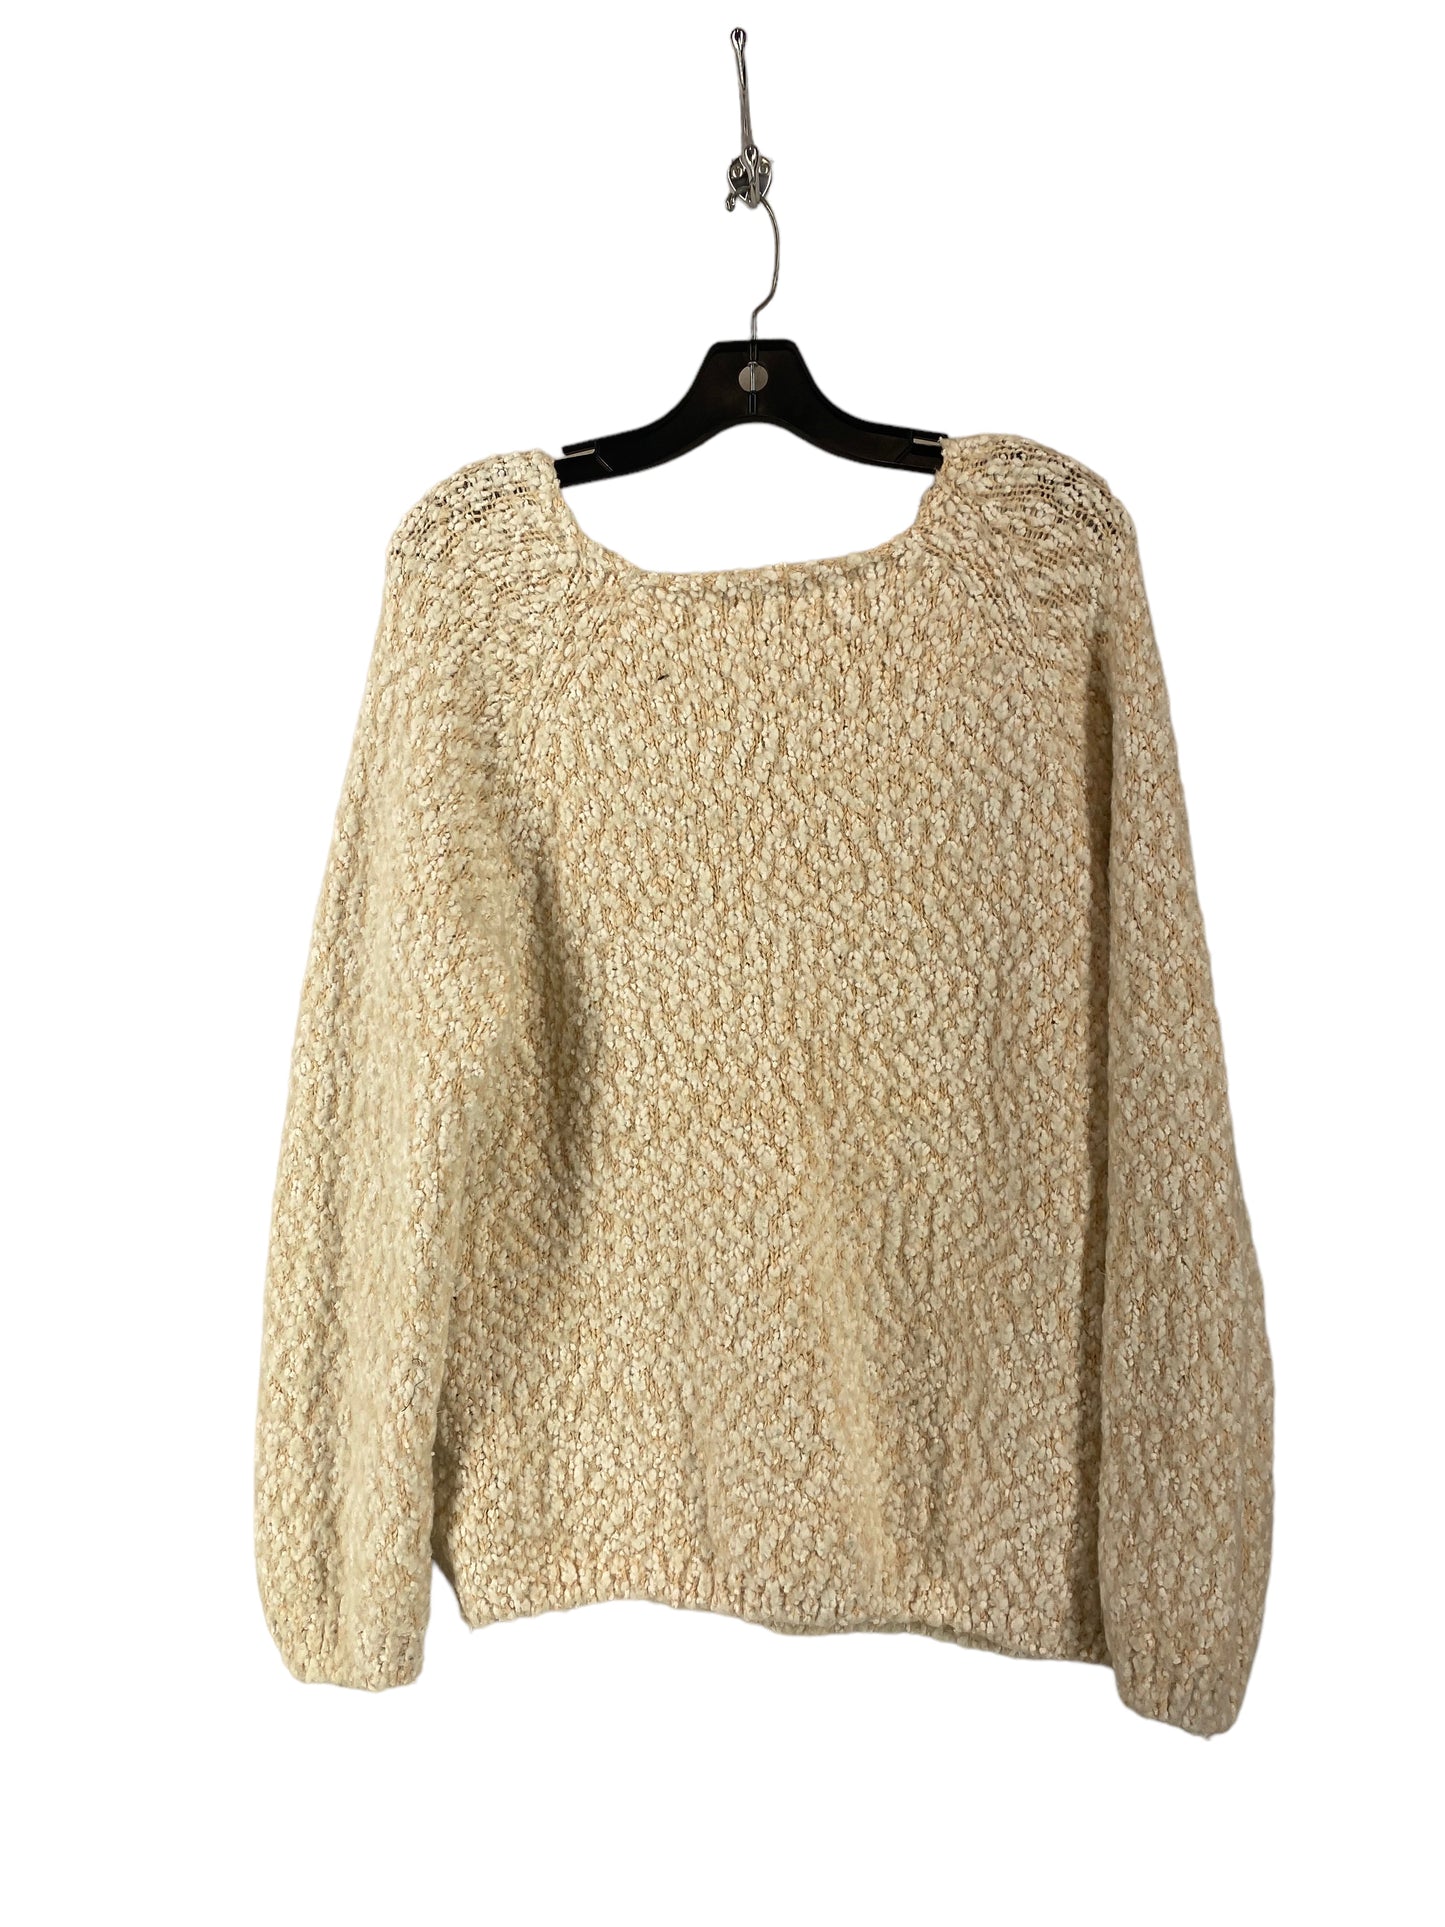 Sweater By Buffalo David Bitton  Size: 2x